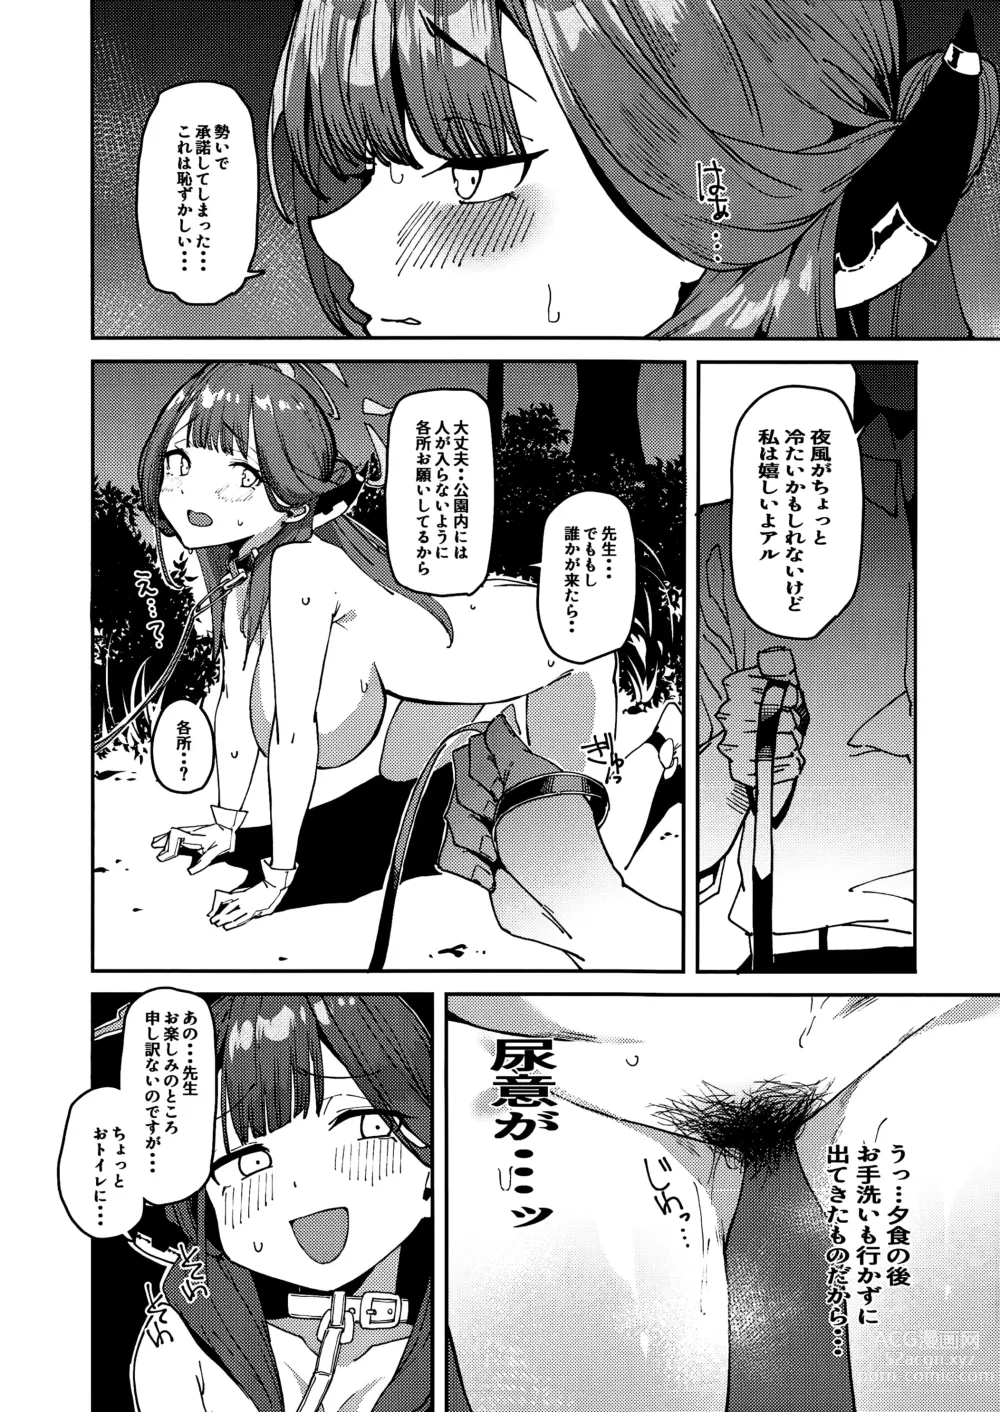 Page 9 of doujinshi Aru-chan Shachou Aigan Doubutsu ni Naru